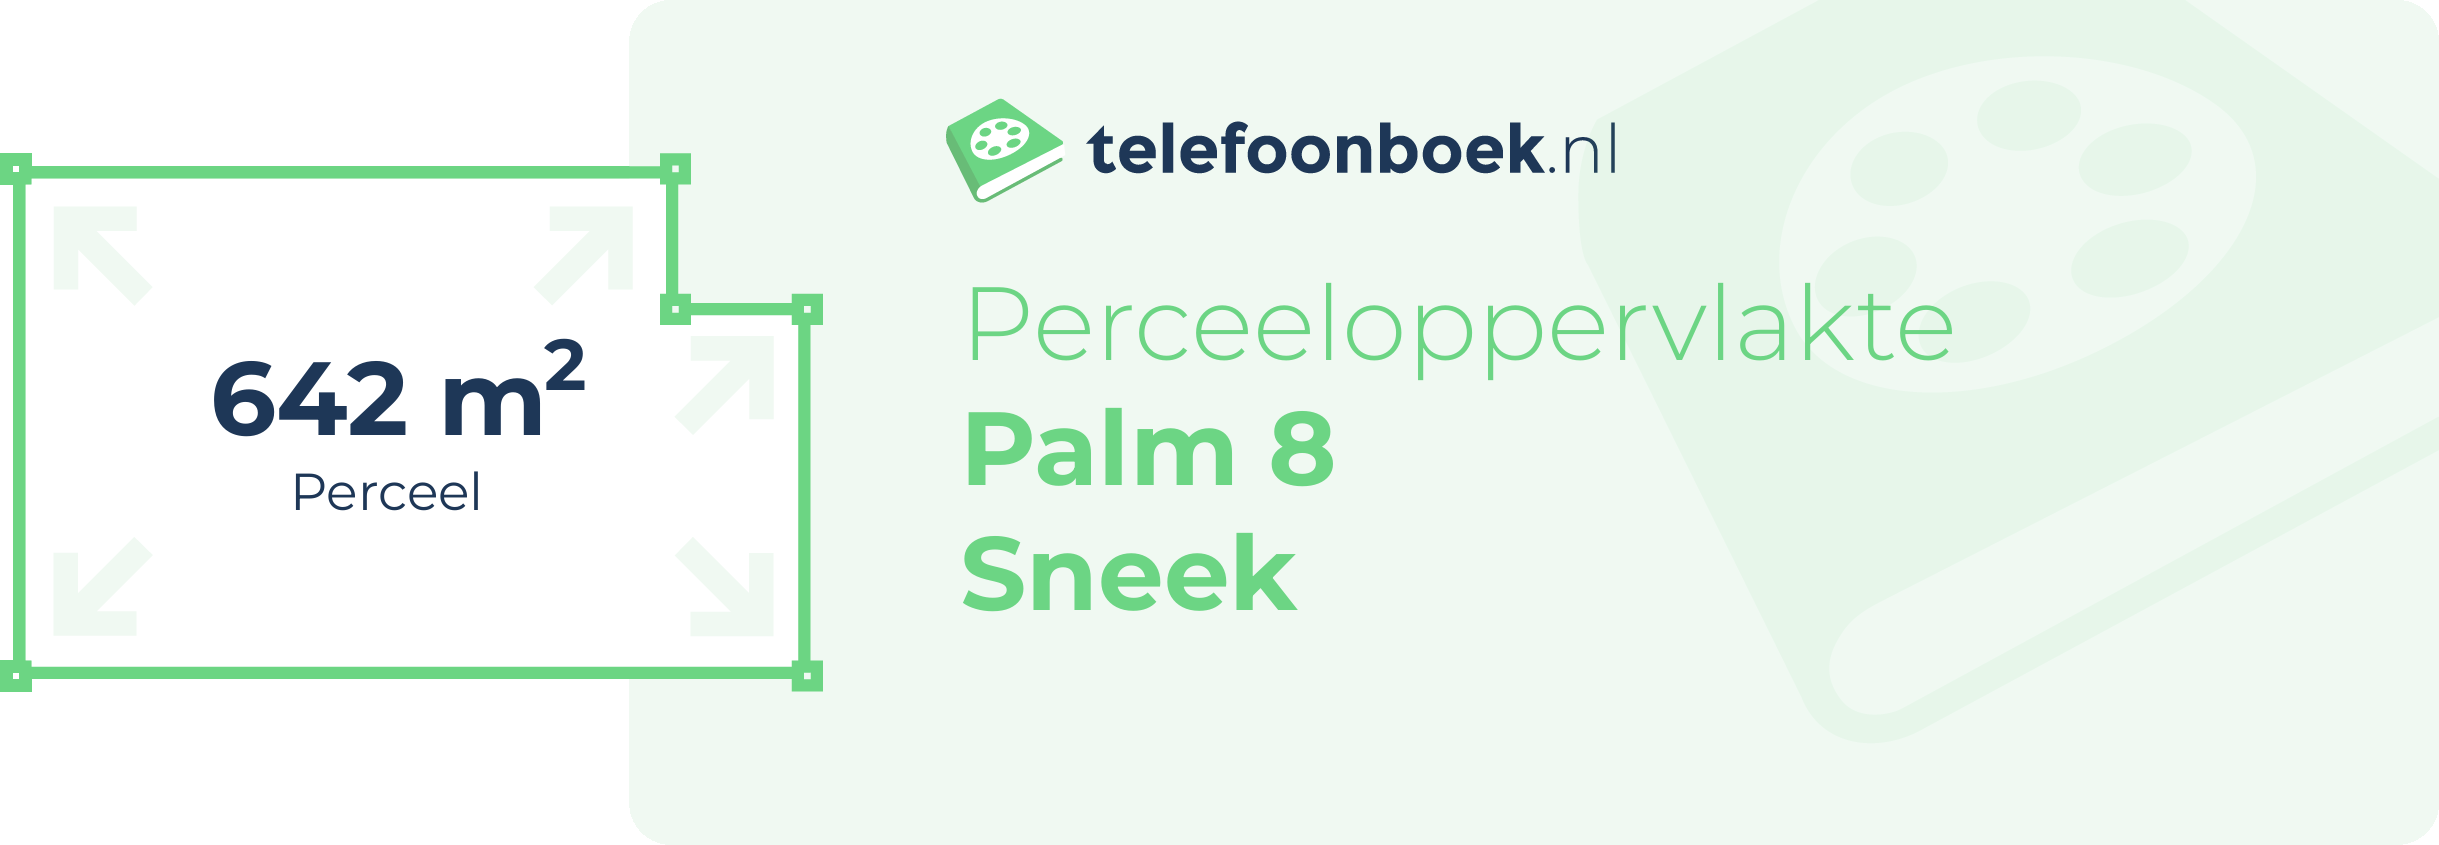 Perceeloppervlakte Palm 8 Sneek